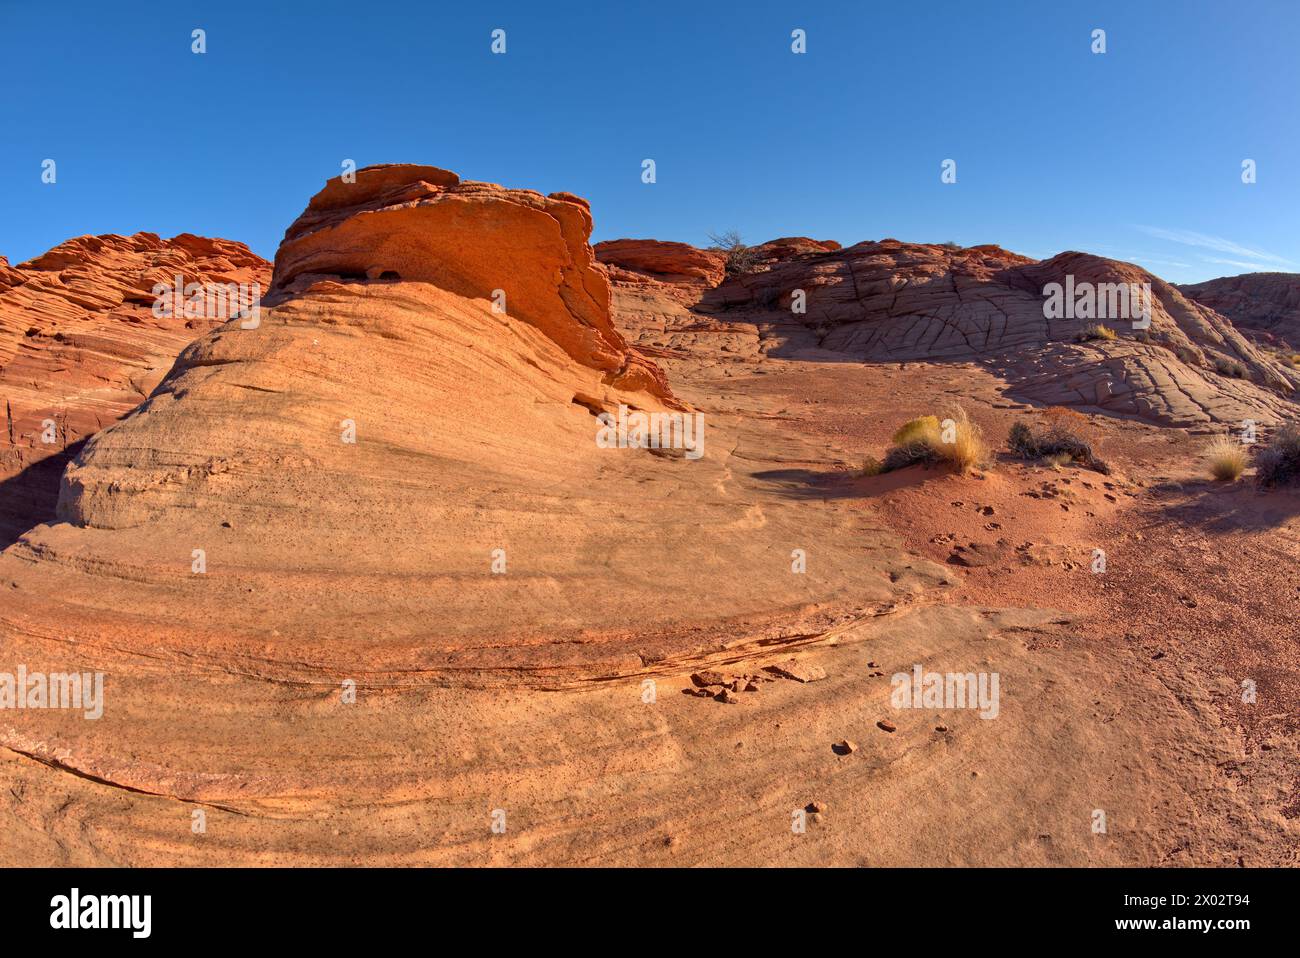 Les tourbillons et la texture en blocs des dunes de sable fossilisées dans les badlands de Horseshoe Bend, Arizona, États-Unis d'Amérique, Amérique du Nord Banque D'Images